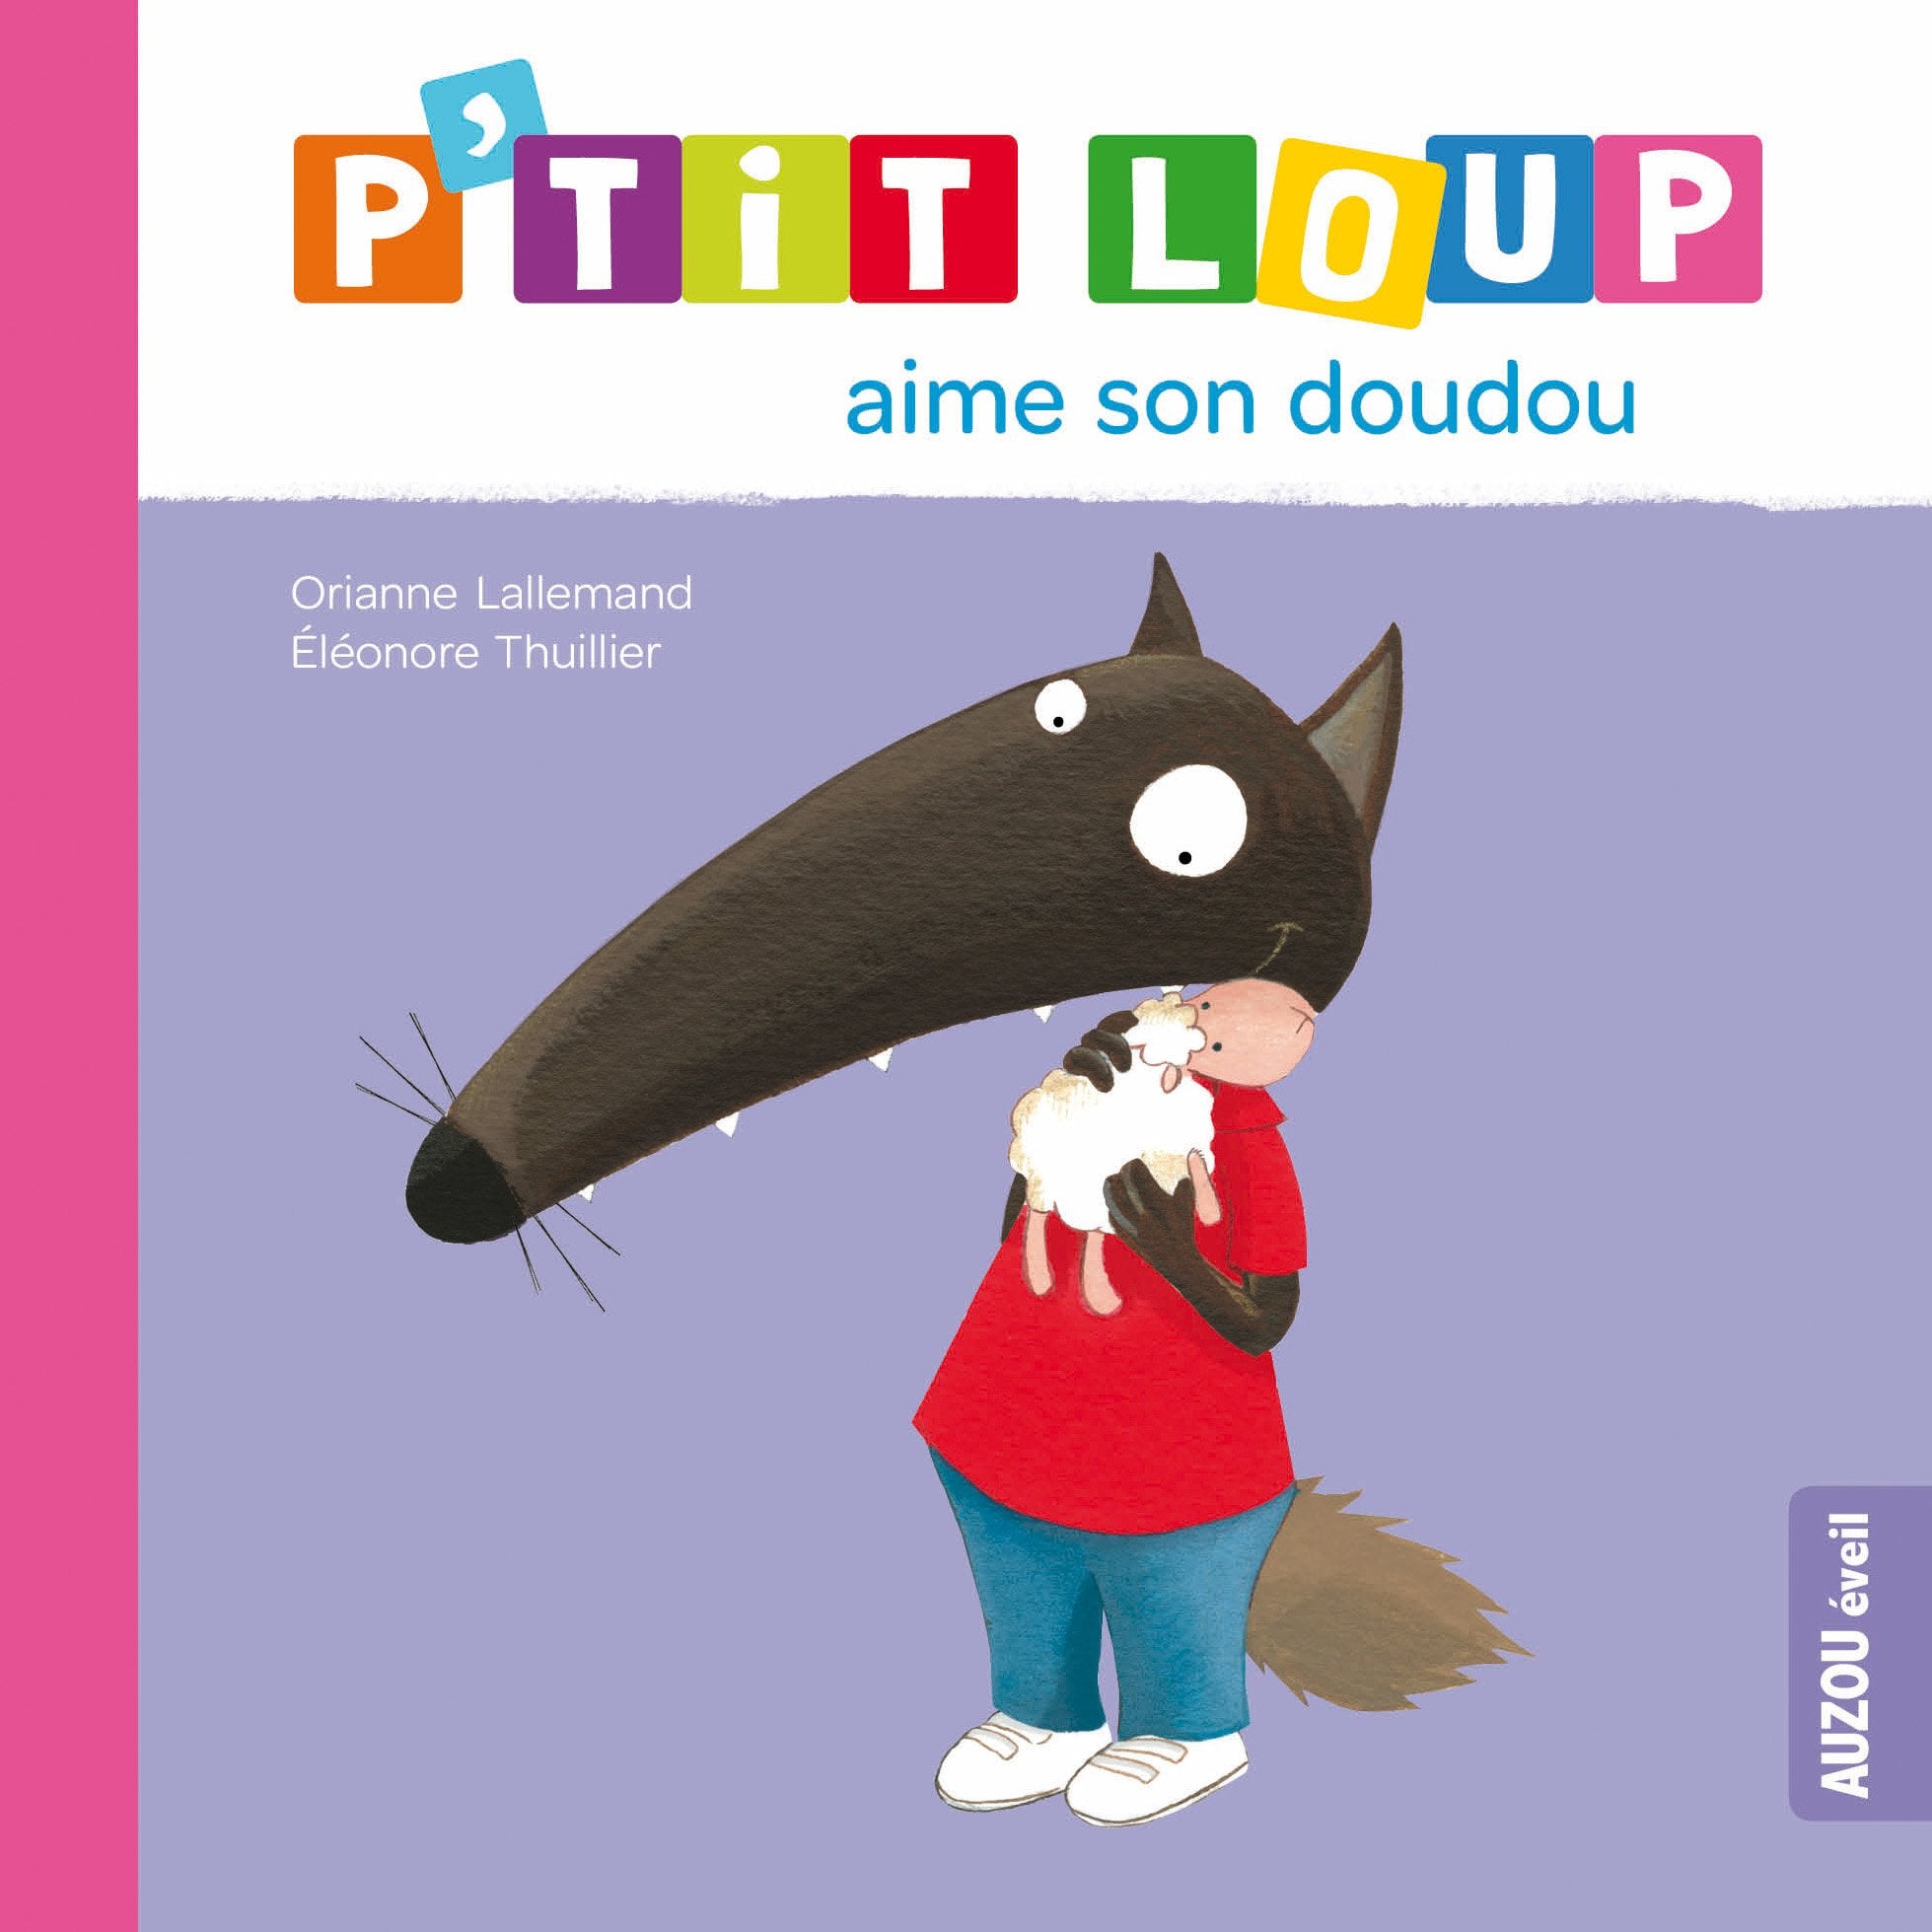 Livre ISBN 2733824244 P'tit Loup : P'tit loup aime son doudou (Orianne Lallemand)